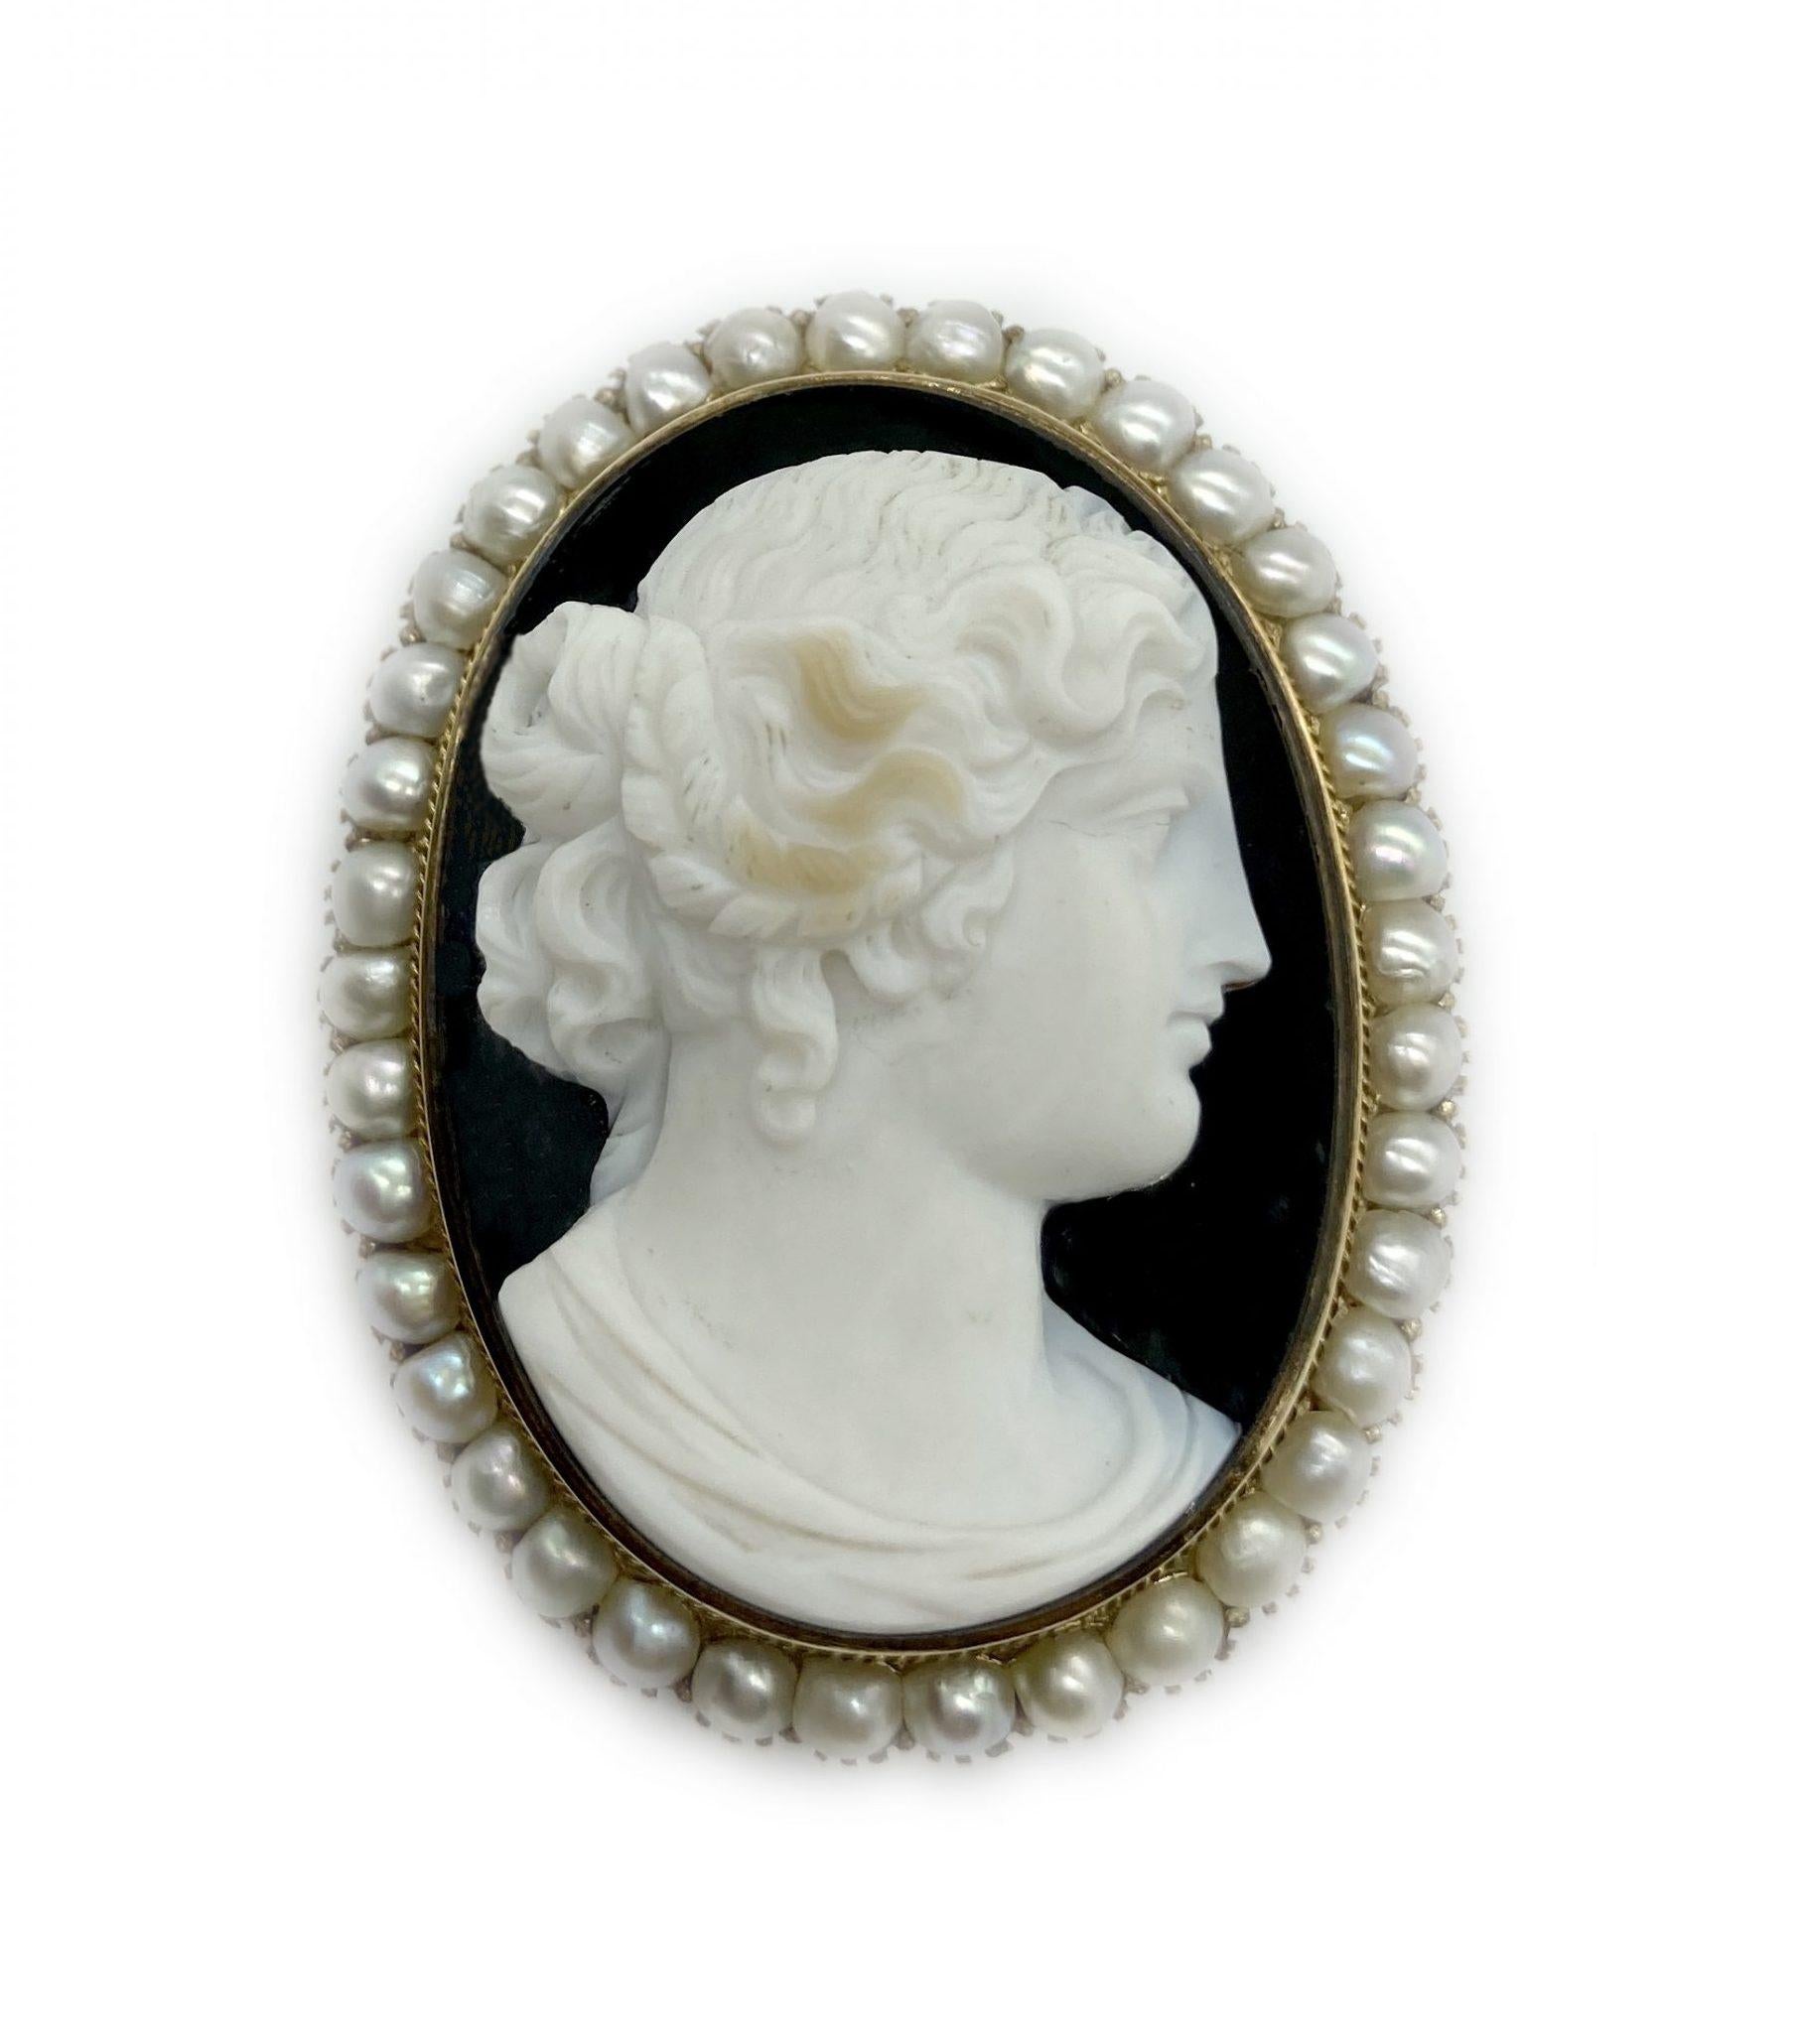 Élégante broche ancienne en camée représentant le profil d'une dame, entouré de perles.